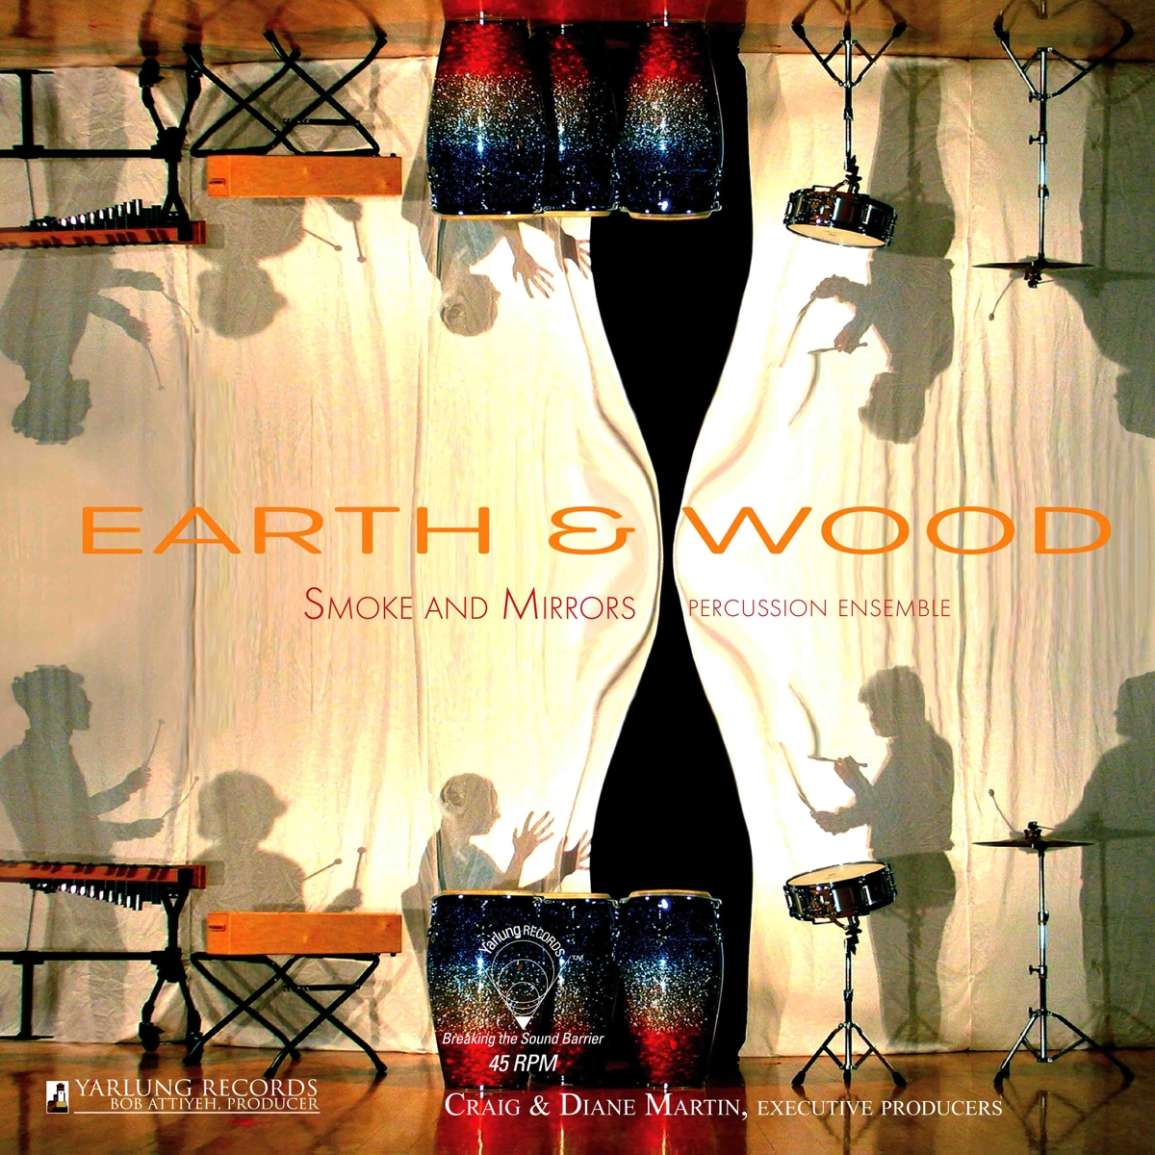 Vinile Smoke & Mirrors Percussion Ensemble - Earth & Wood NUOVO SIGILLATO, EDIZIONE DEL 10/03/2023 SUBITO DISPONIBILE